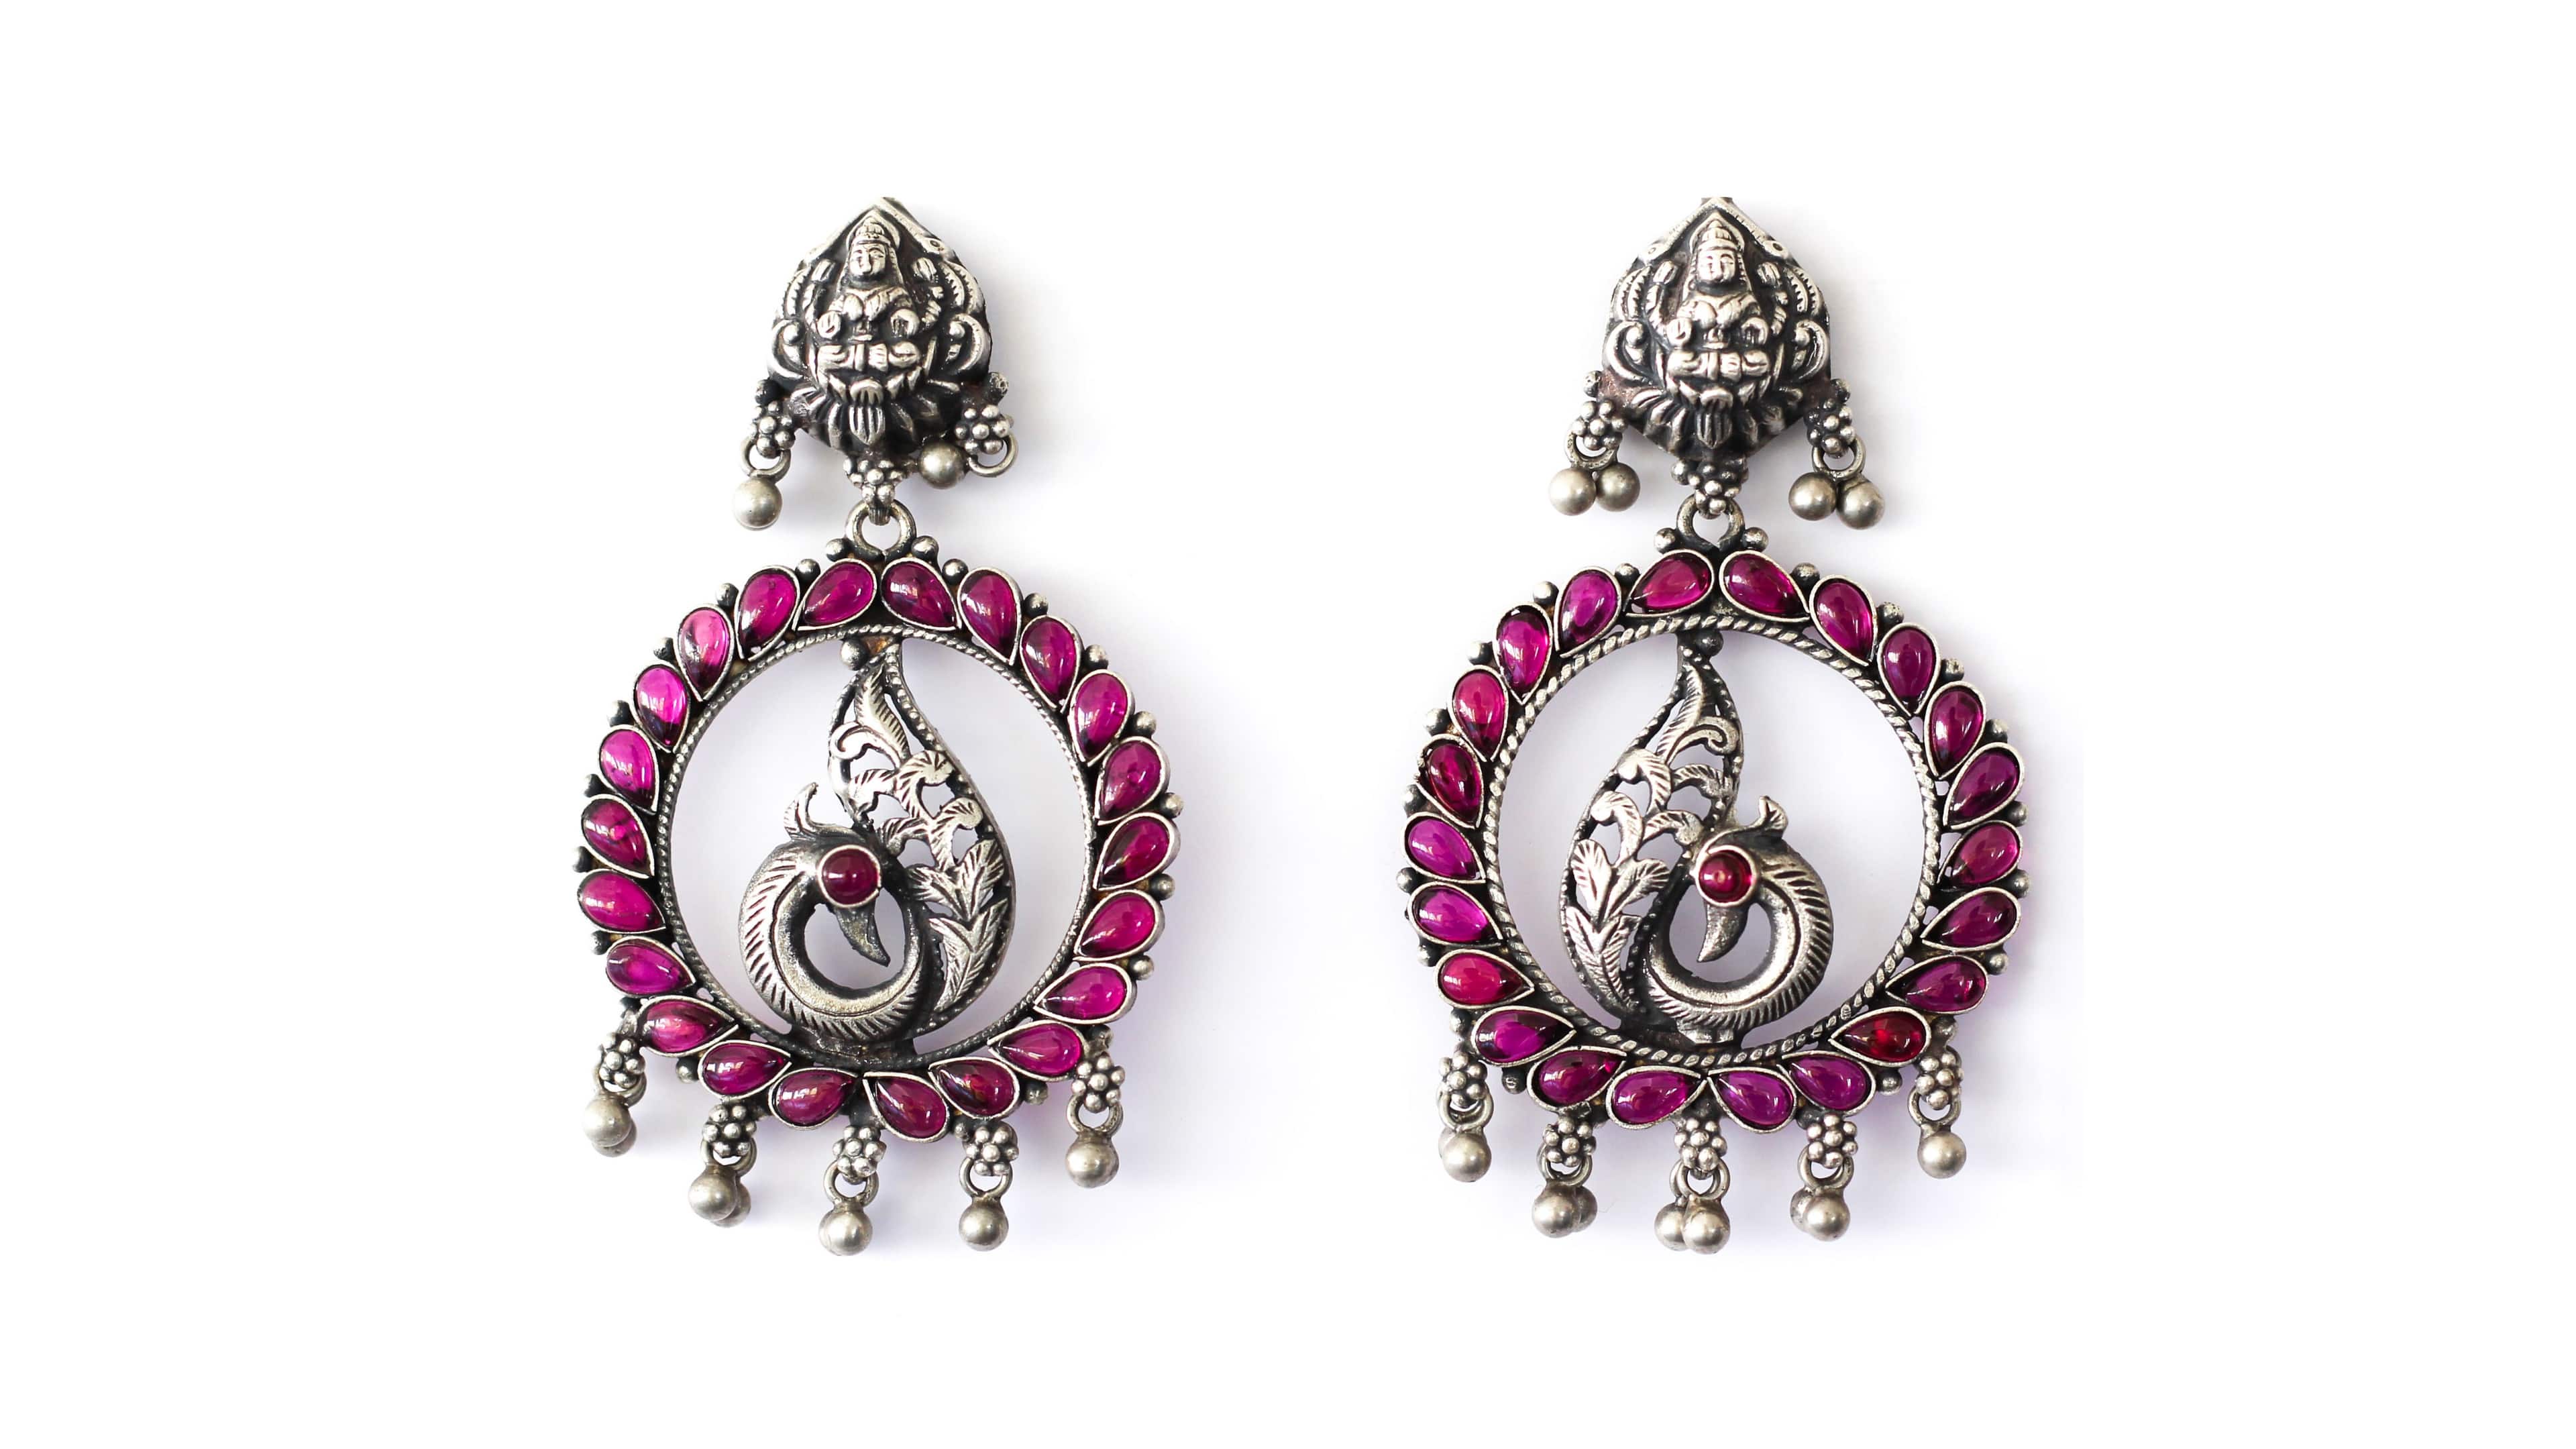 oxidized silver earrings